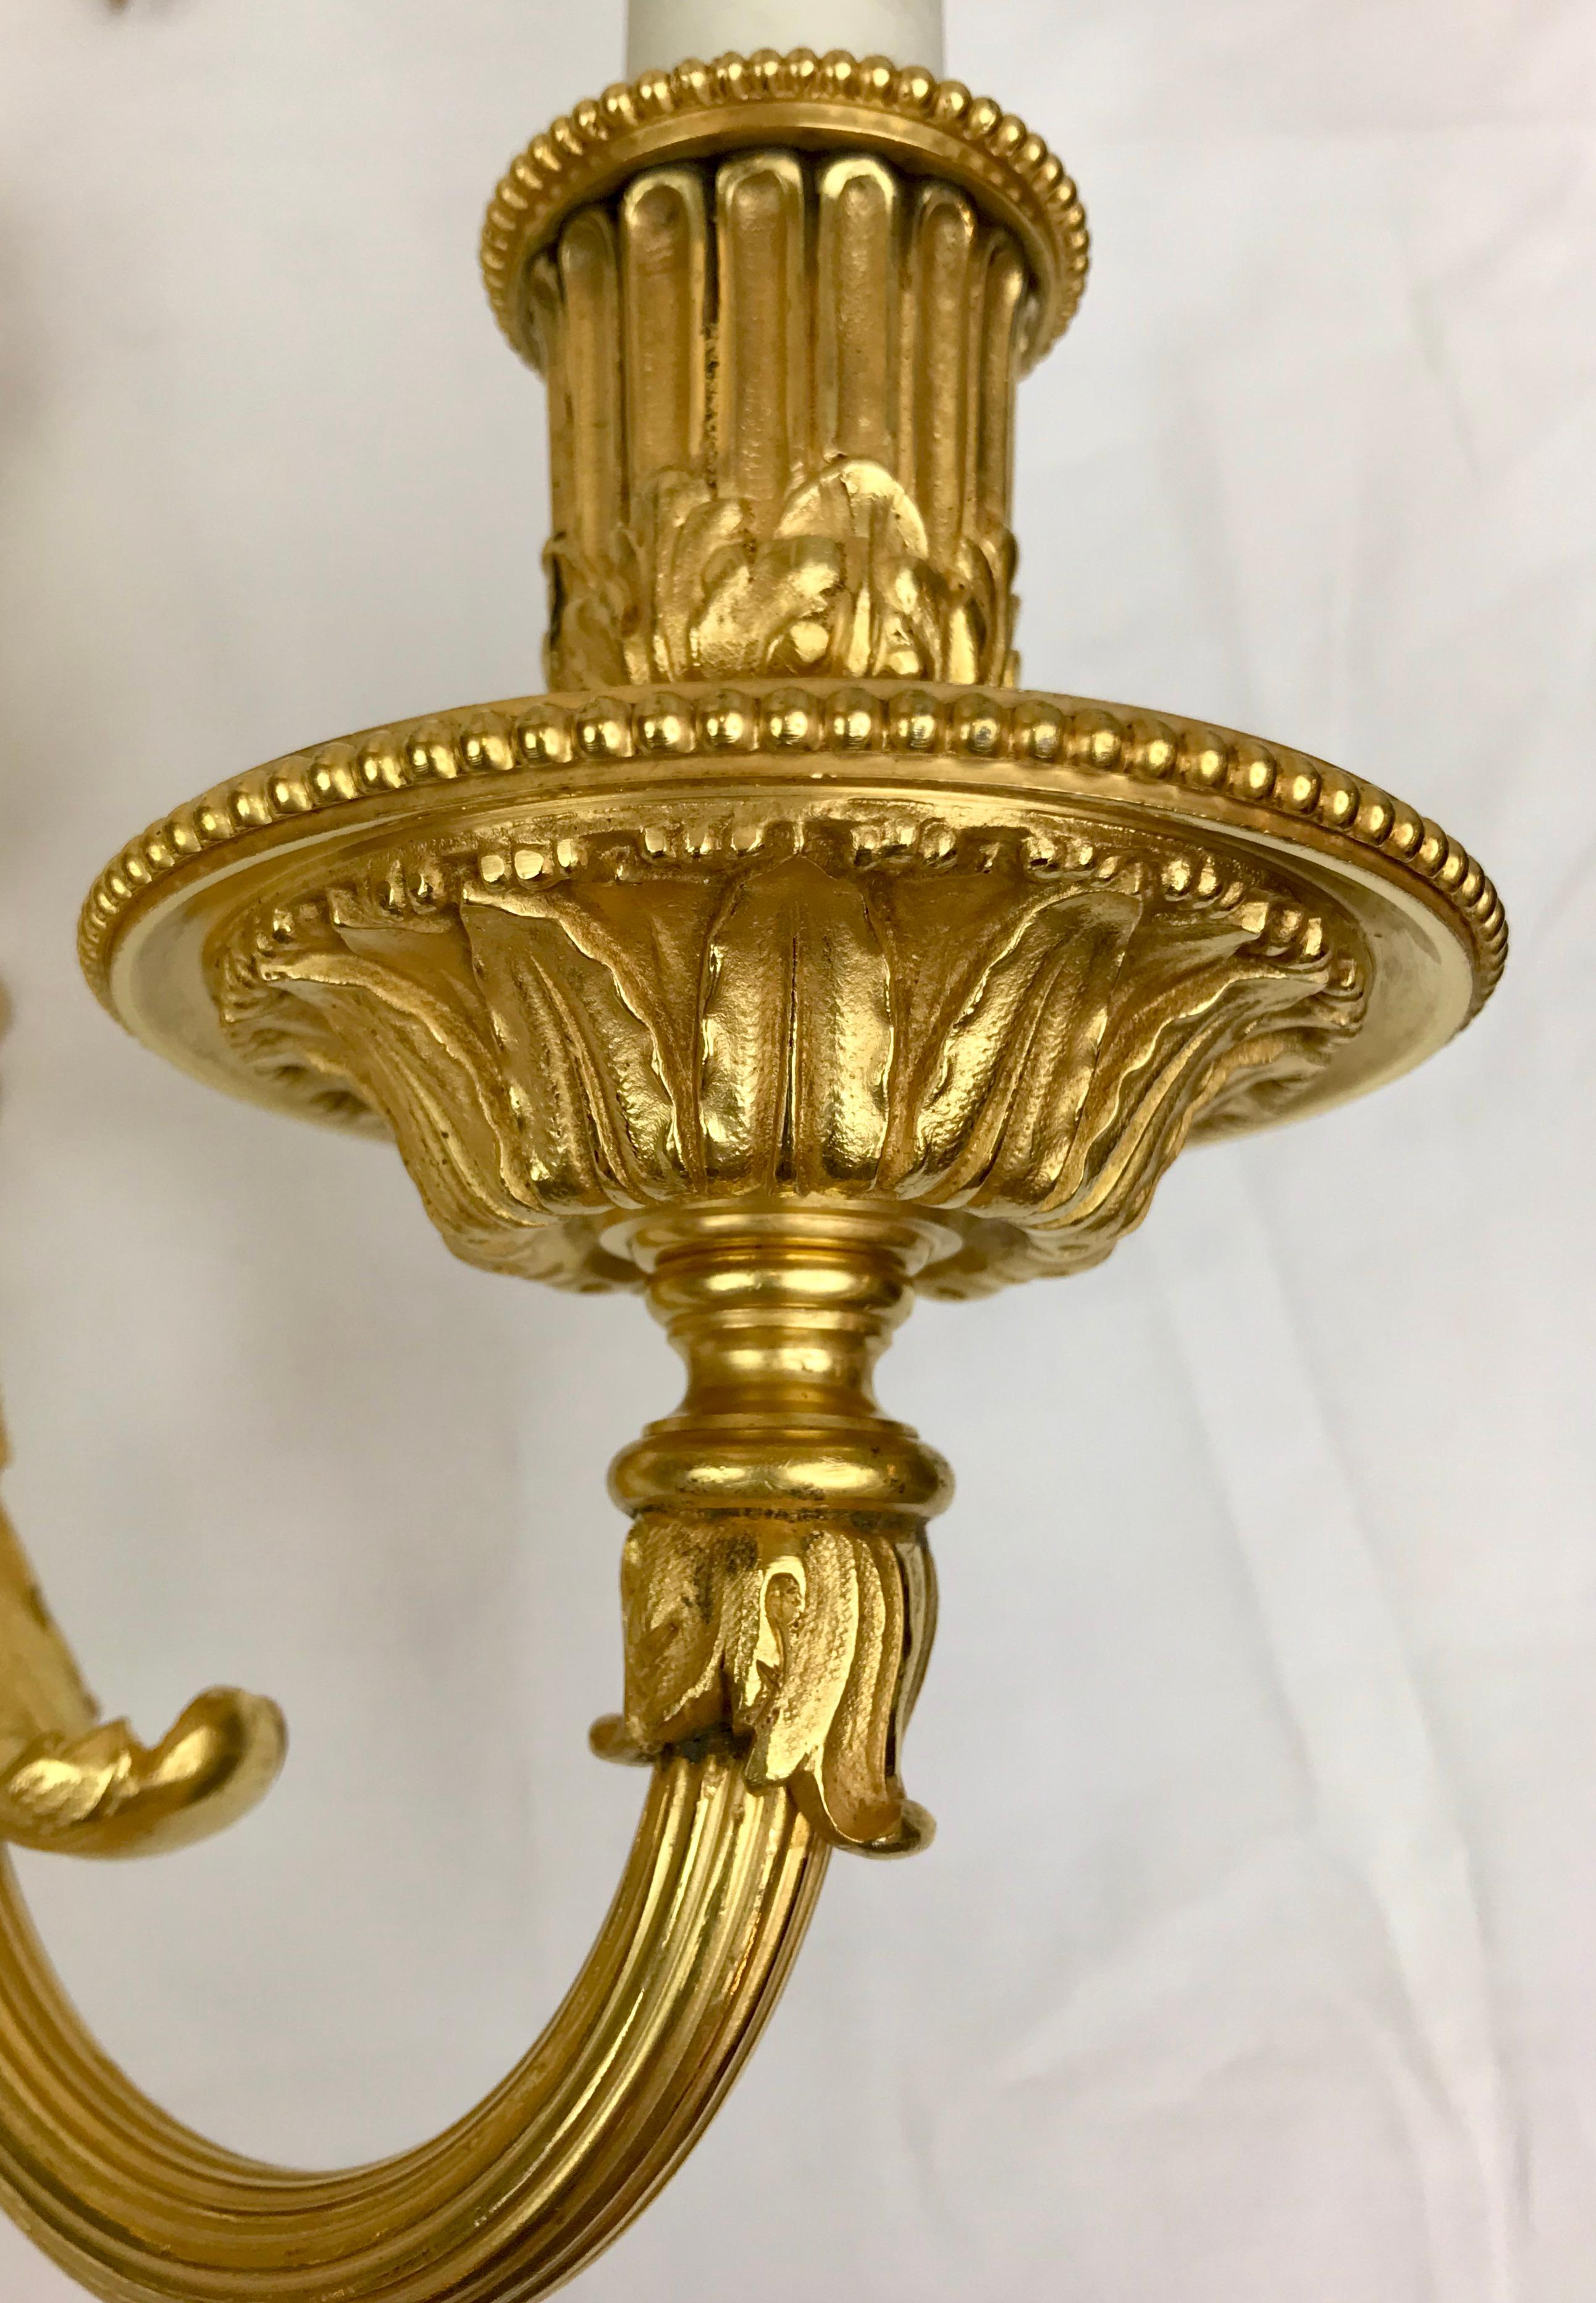 Cette paire d'appliques en bronze doré de style Louis XVI est signée par le célèbre marqueteur Edward F. Caldwell. Ils présentent des motifs néoclassiques, notamment des feuilles d'acanthe, des nœuds papillons et des embouts en forme de pomme de